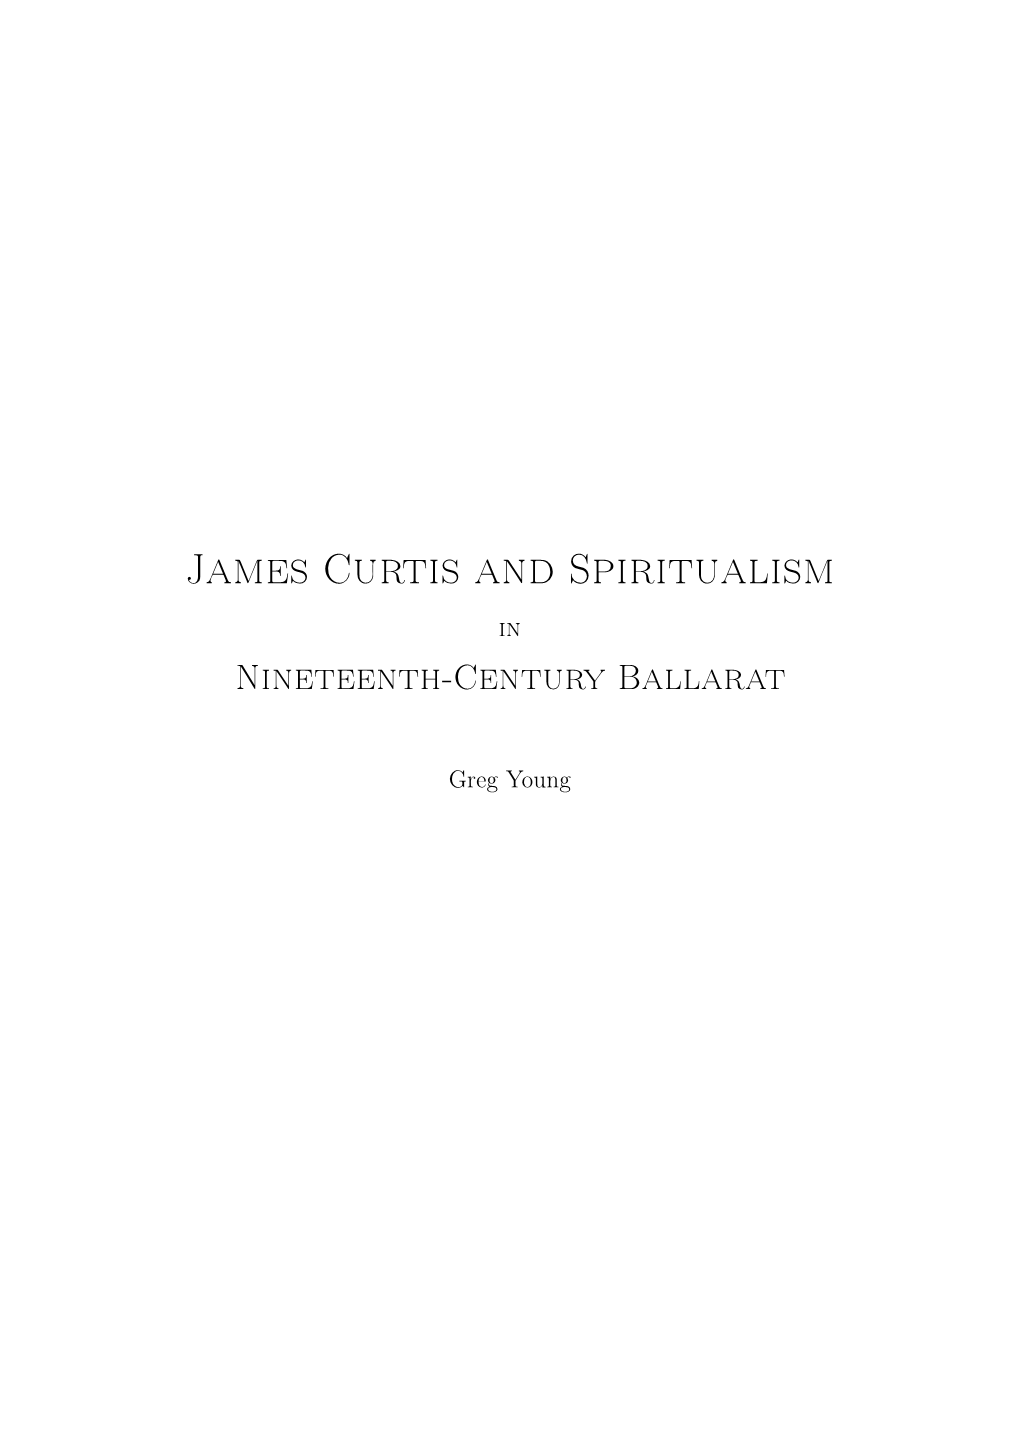 James Curtis and Spiritualism in Nineteenth-Century Ballarat